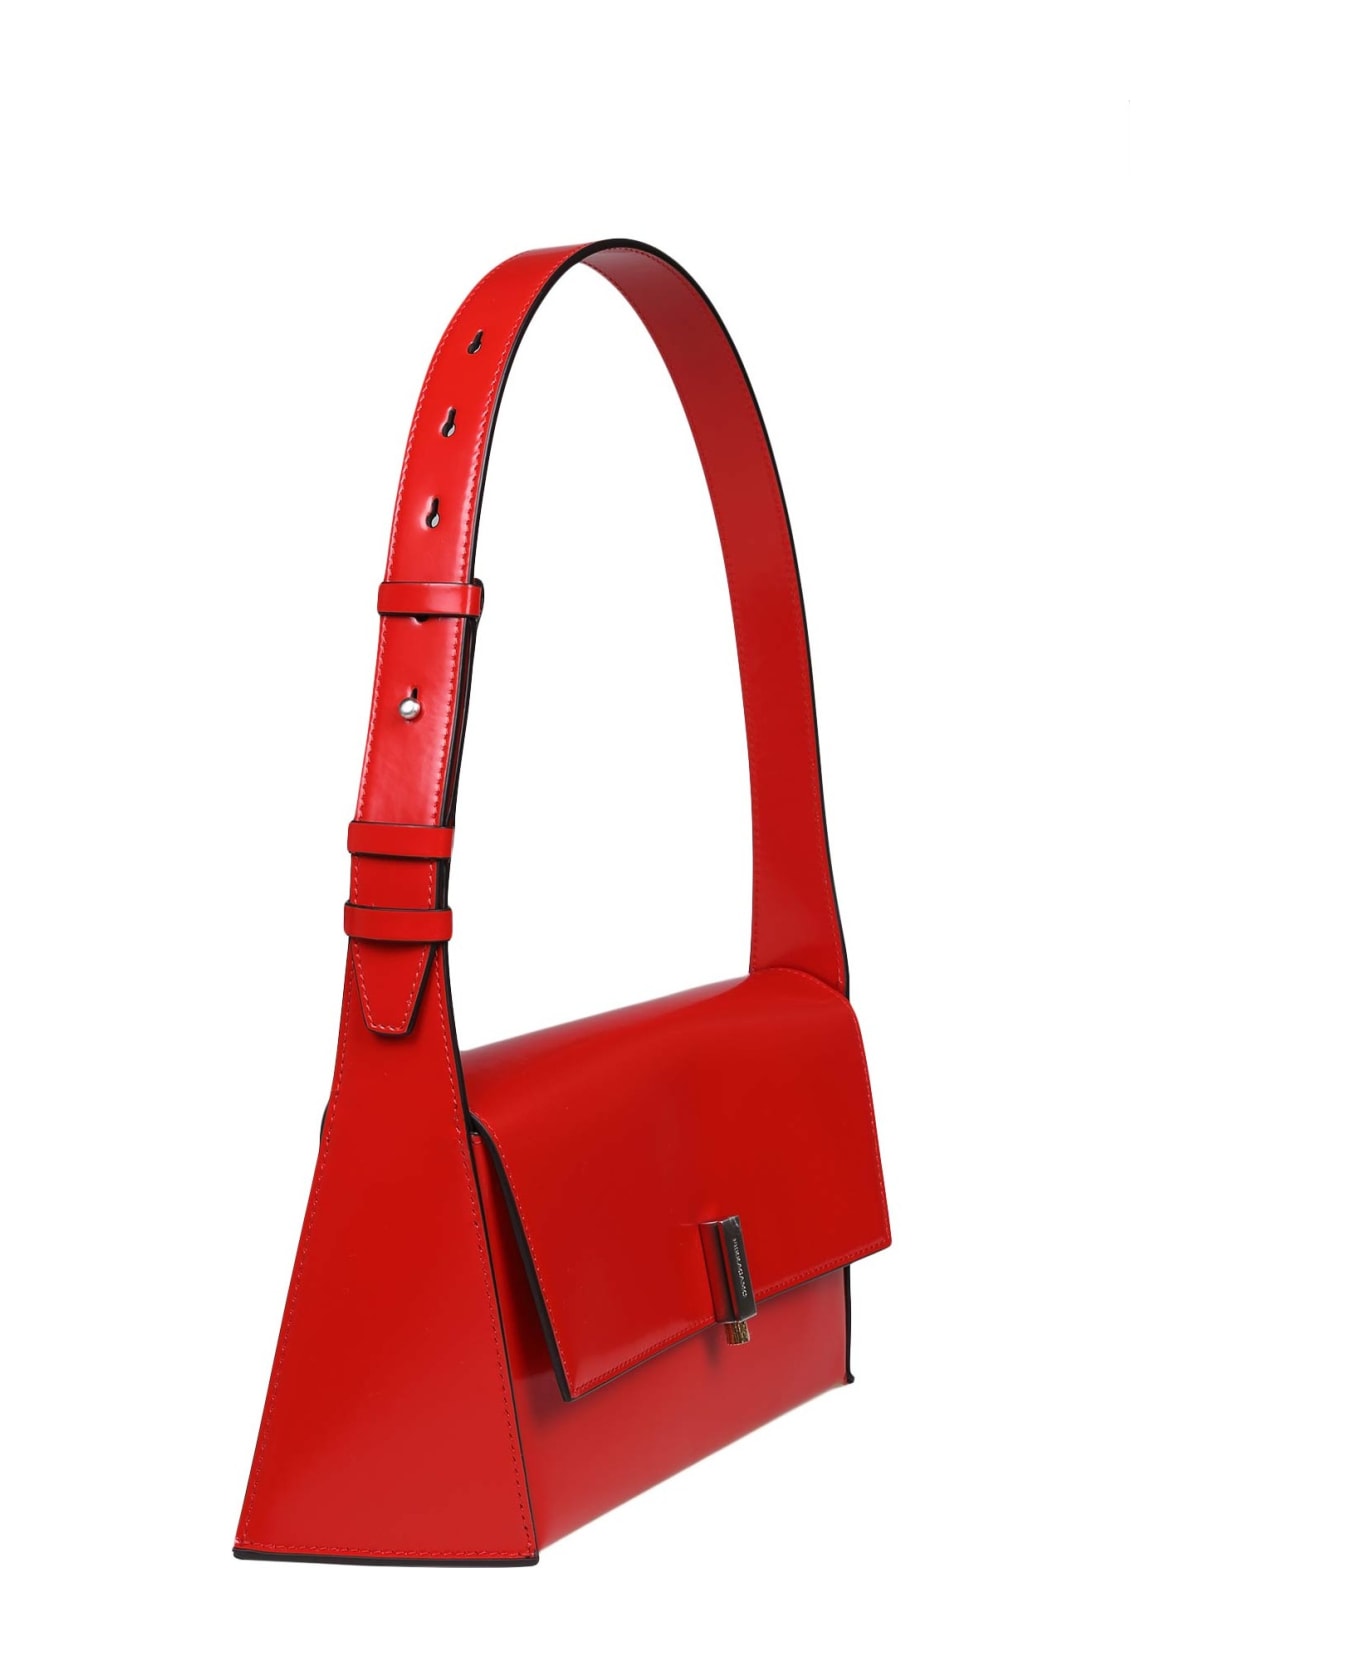 Ferragamo Shoulder Bag Color Red - Flame Red 